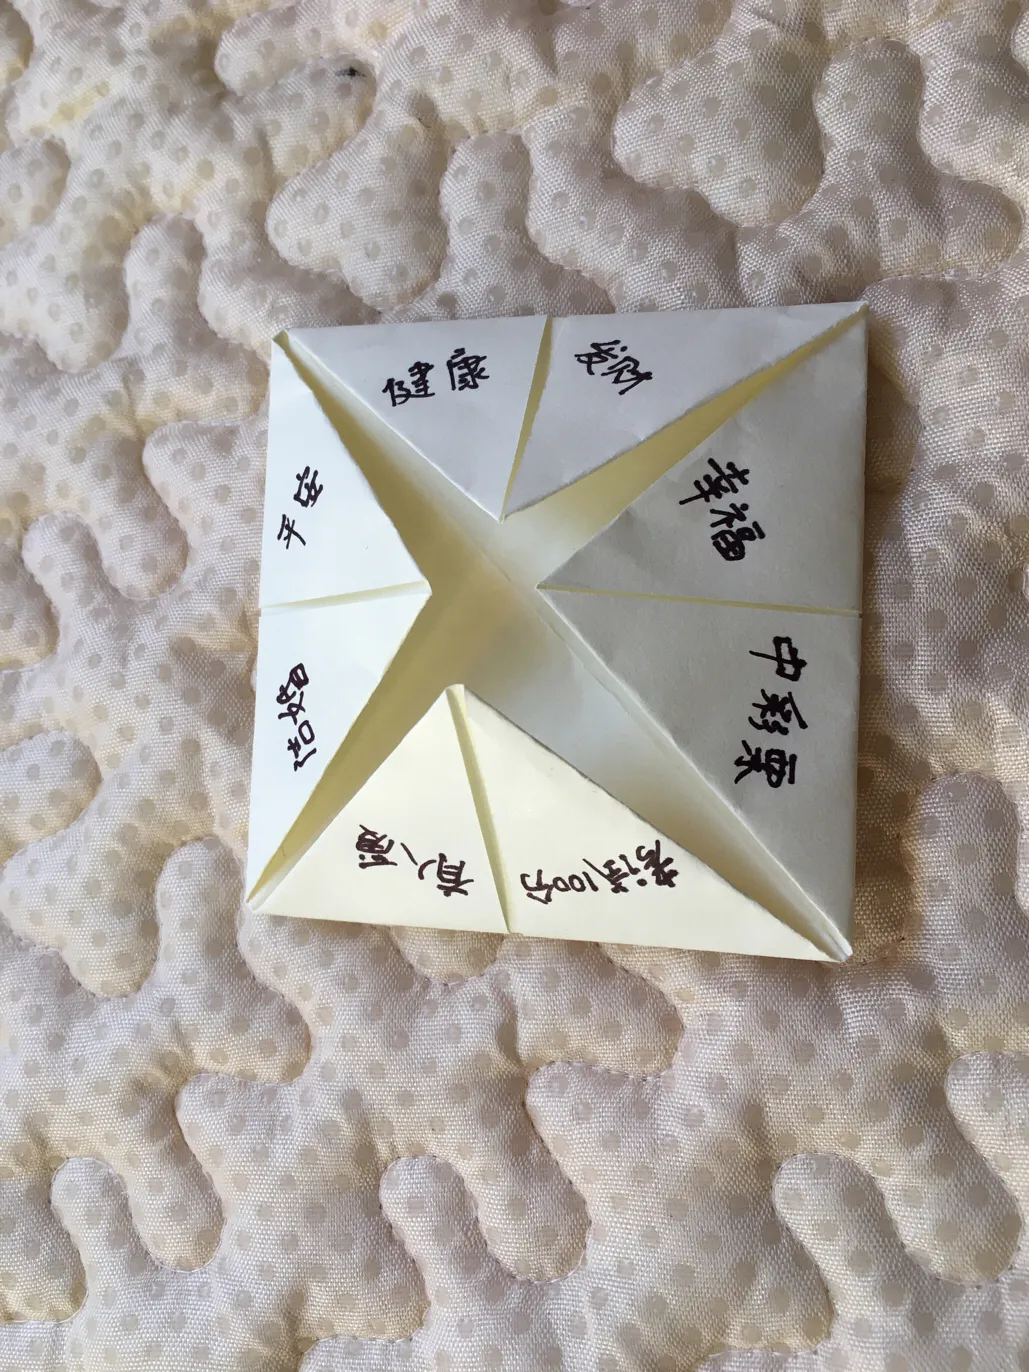 80后玩过的游戏1：东南西北折纸，你还记得方法和玩法吗？